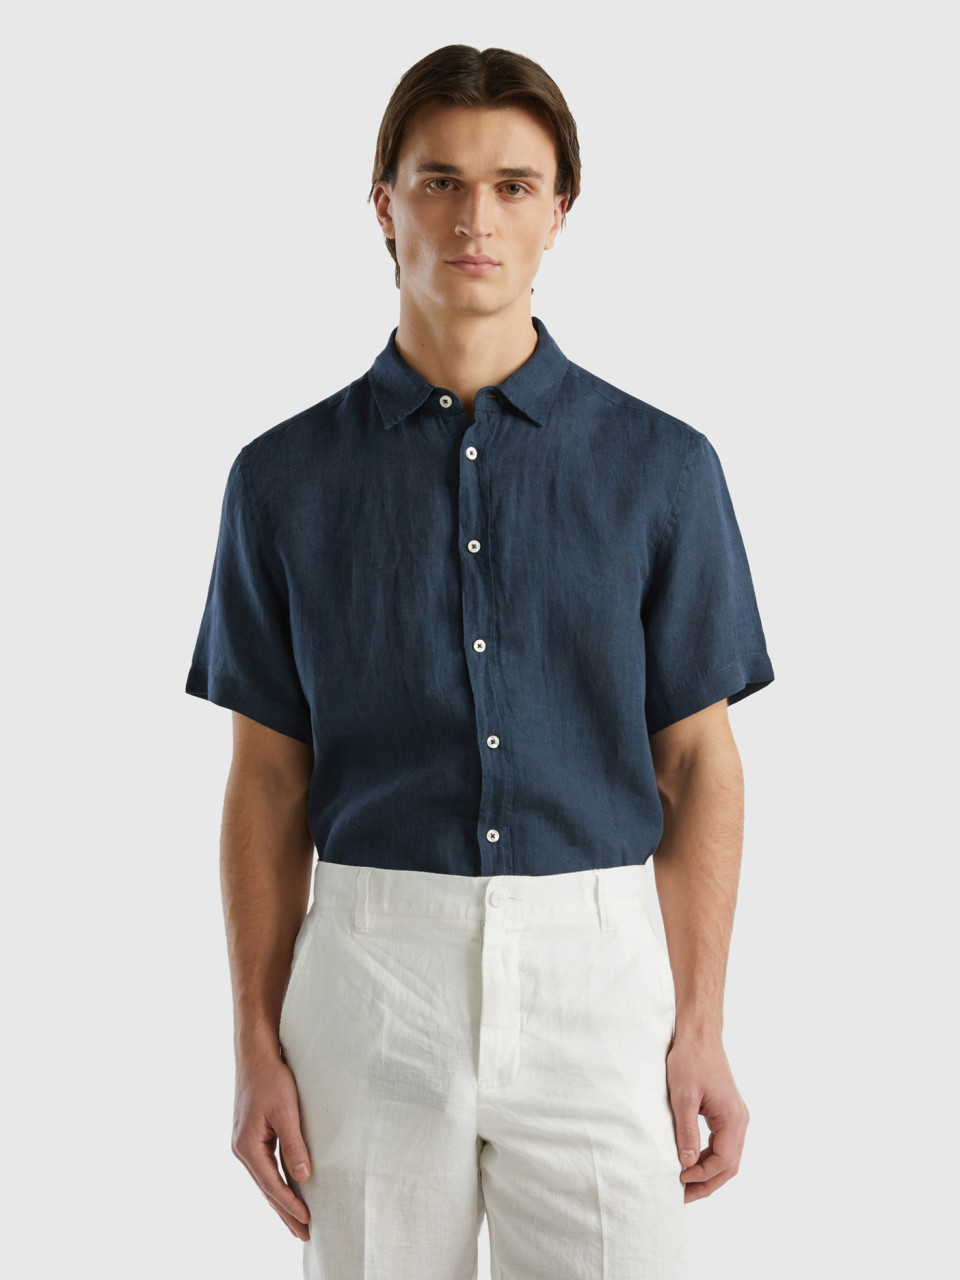 Benetton, 100% Linen Short Sleeve Shirt, Dark Blue, Men